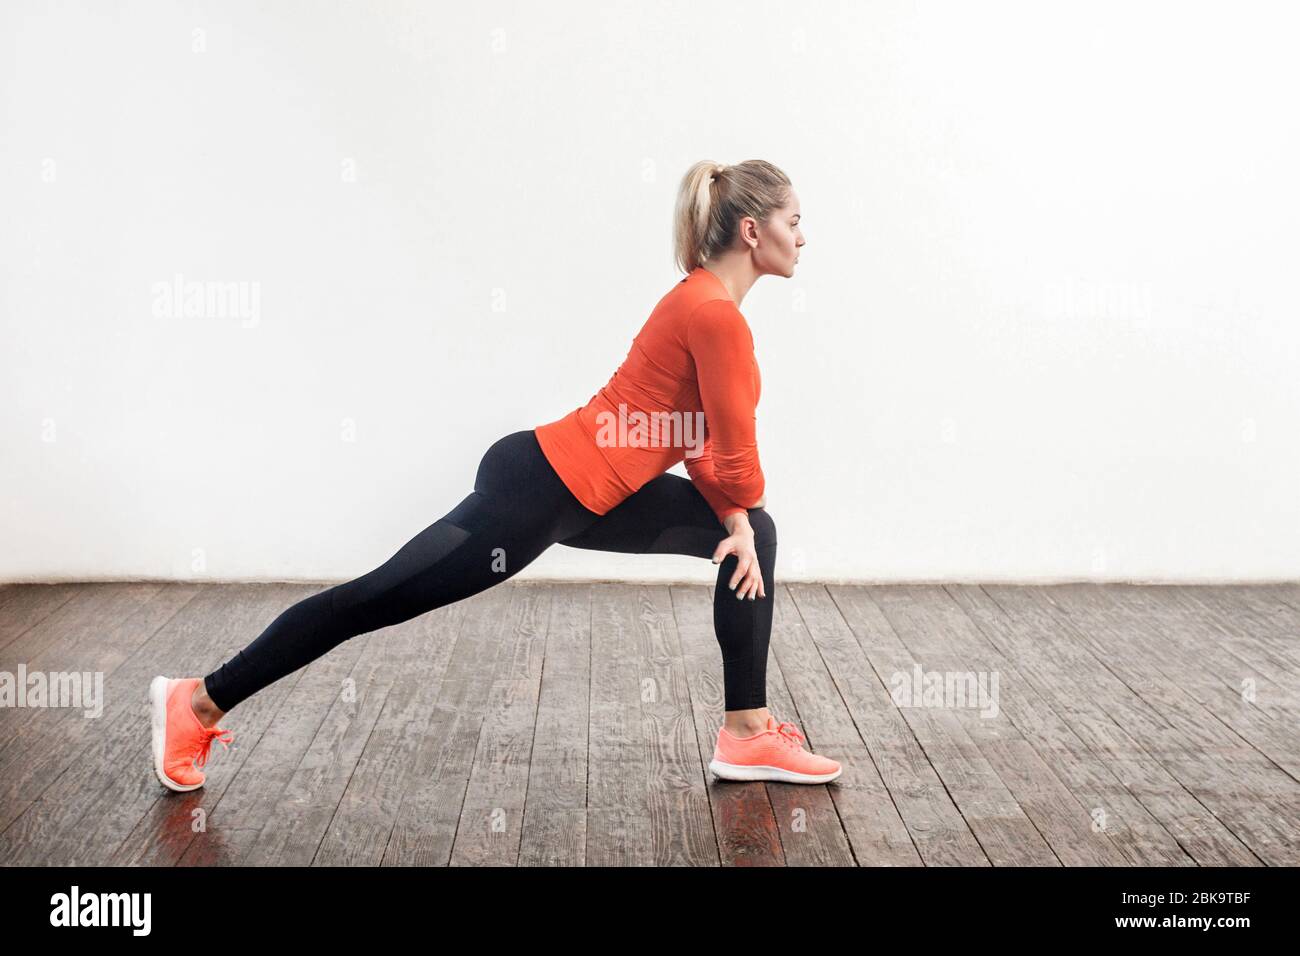 Mujer atractiva atlética delgada con ropa deportiva ajustada haciendo ejercicios de estiramiento de para una mayor flexibilidad, ejercicio en la parte inferior del cuerpo. Atención de salud, deportivo Fotografía de